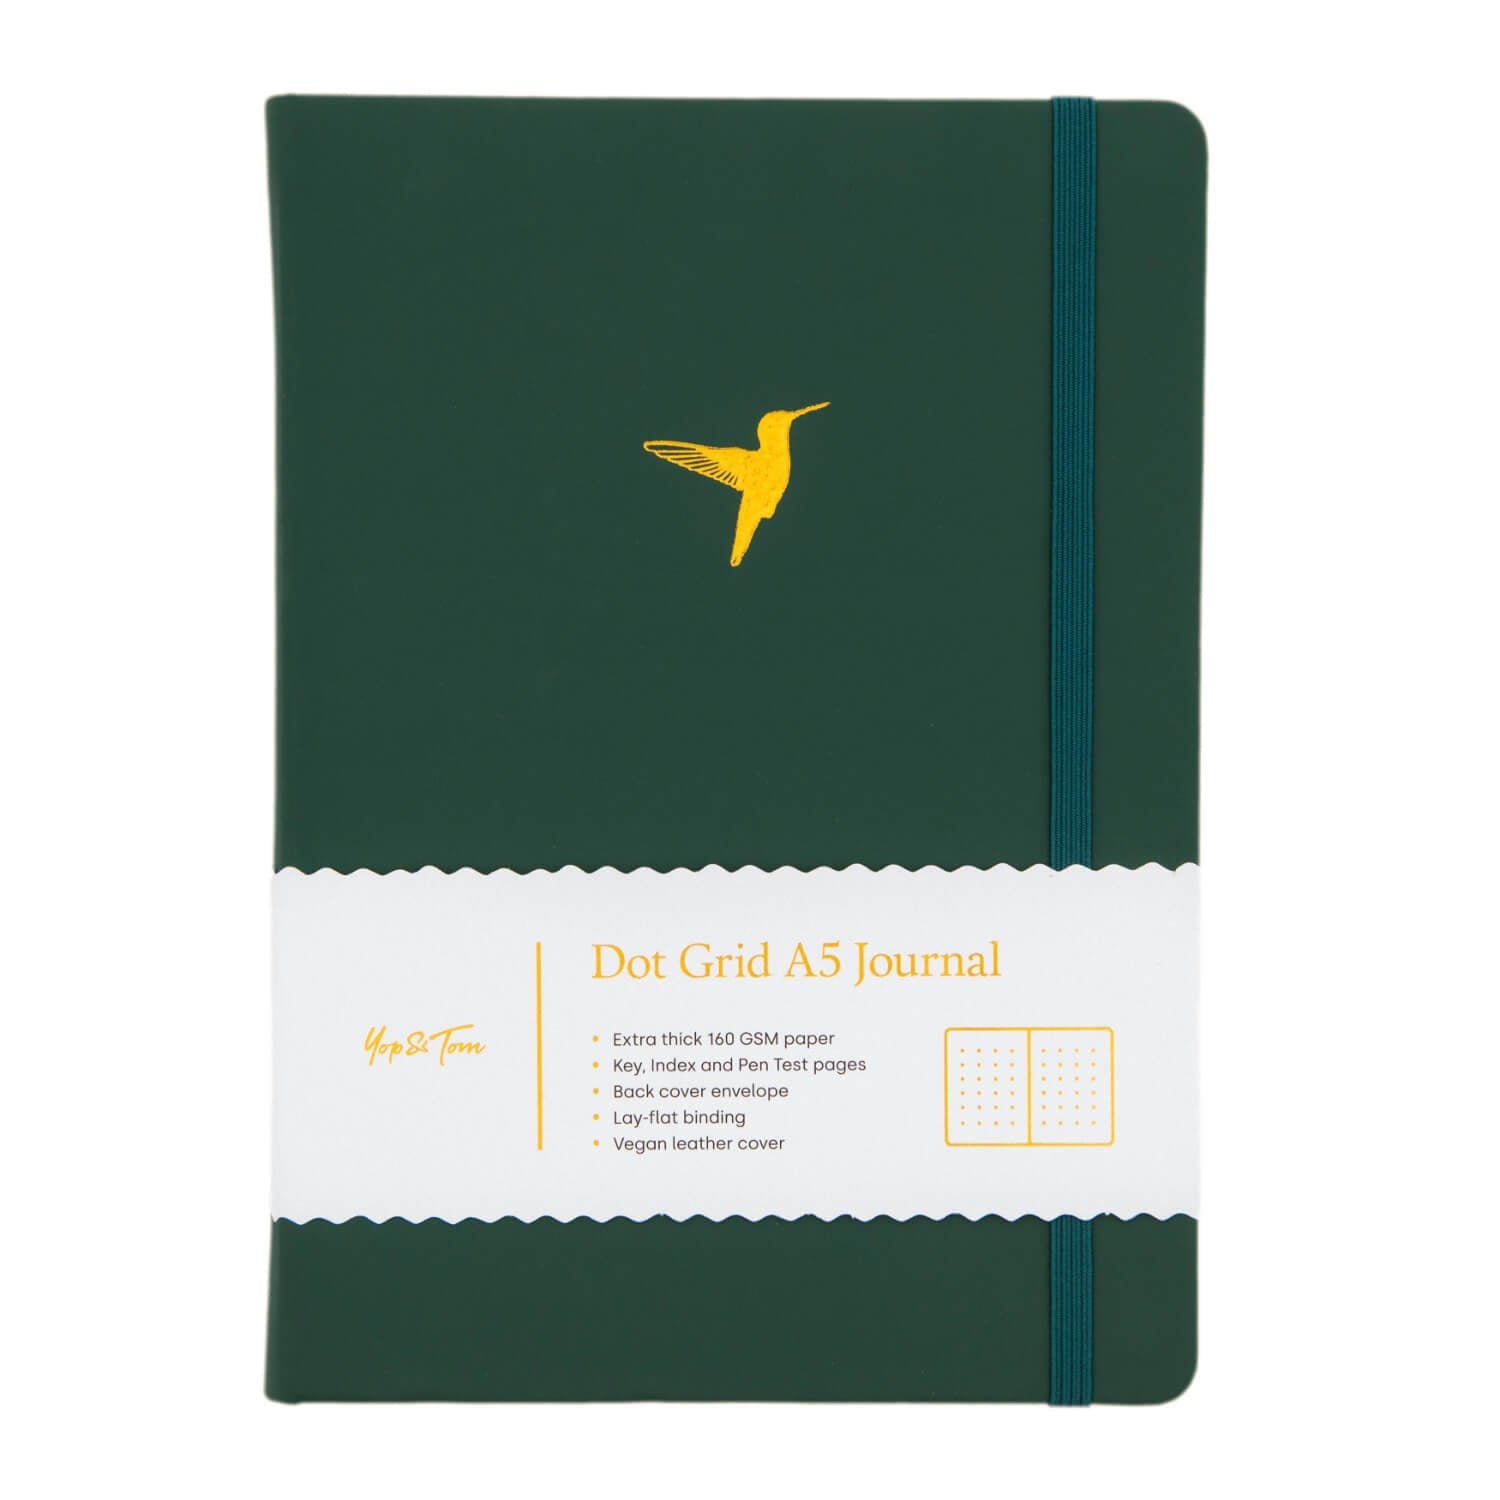 Yop & Tom - A5 Dot Grid Journal - Hummingbird - Forest Green-Notitieboek-DutchMills